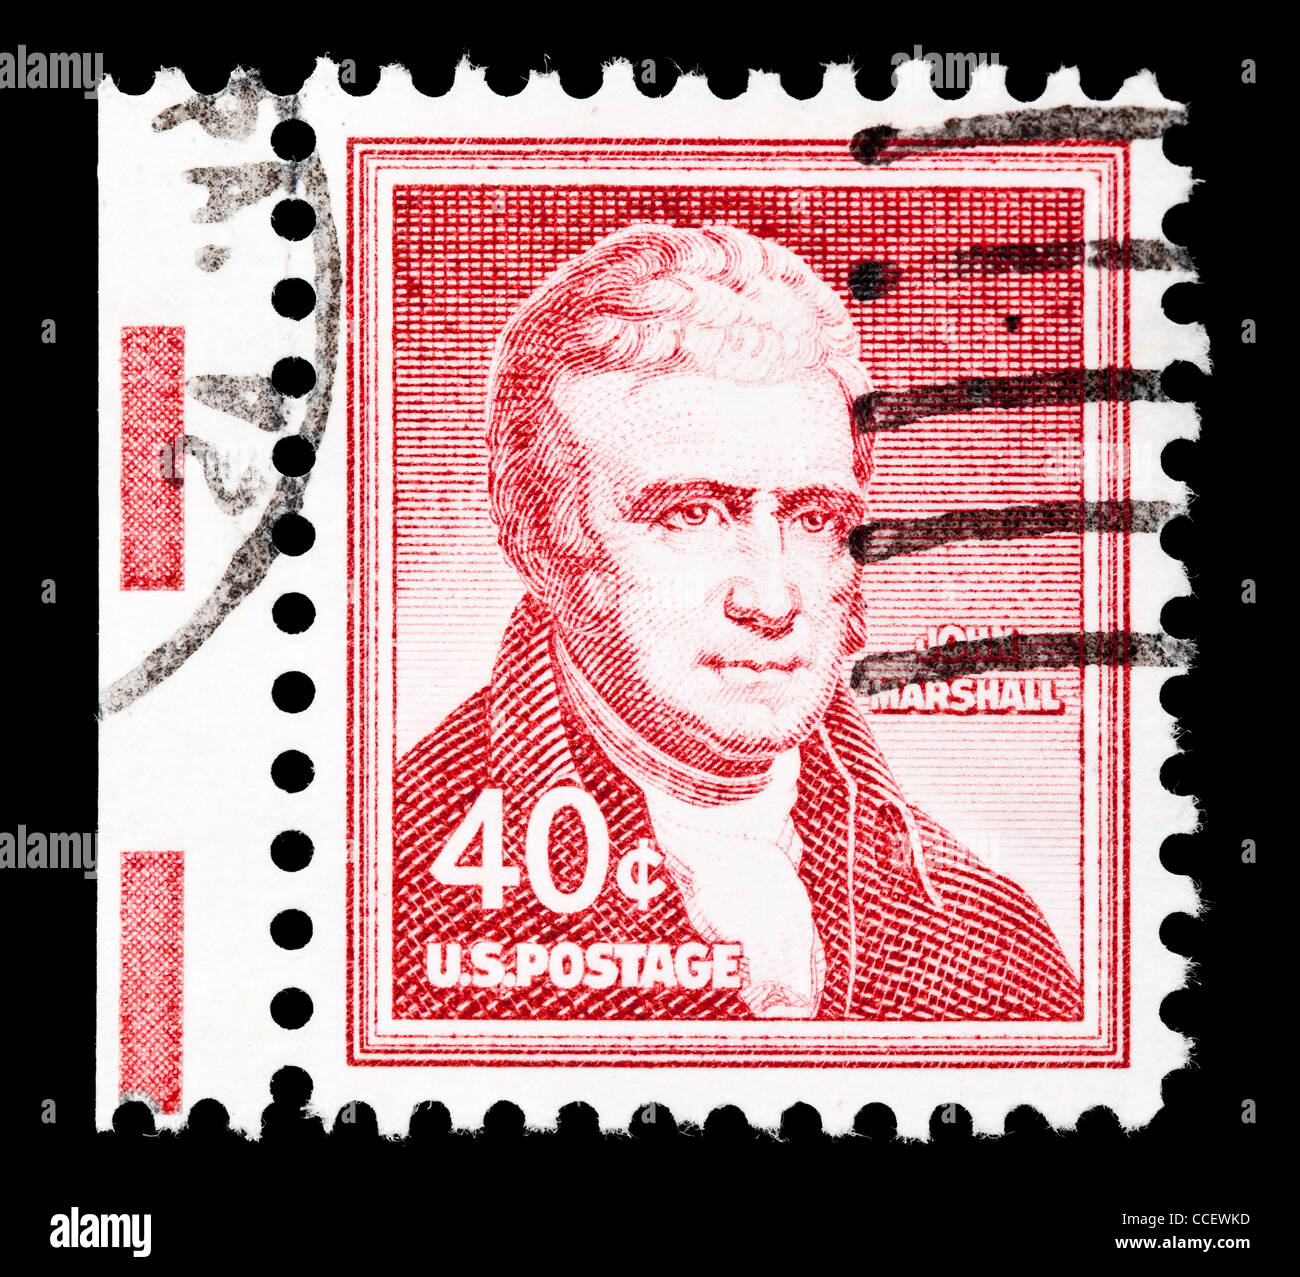 Sello: Postales de los Estados Unidos, John Marshall, el 40% de 1955, estampado Foto de stock